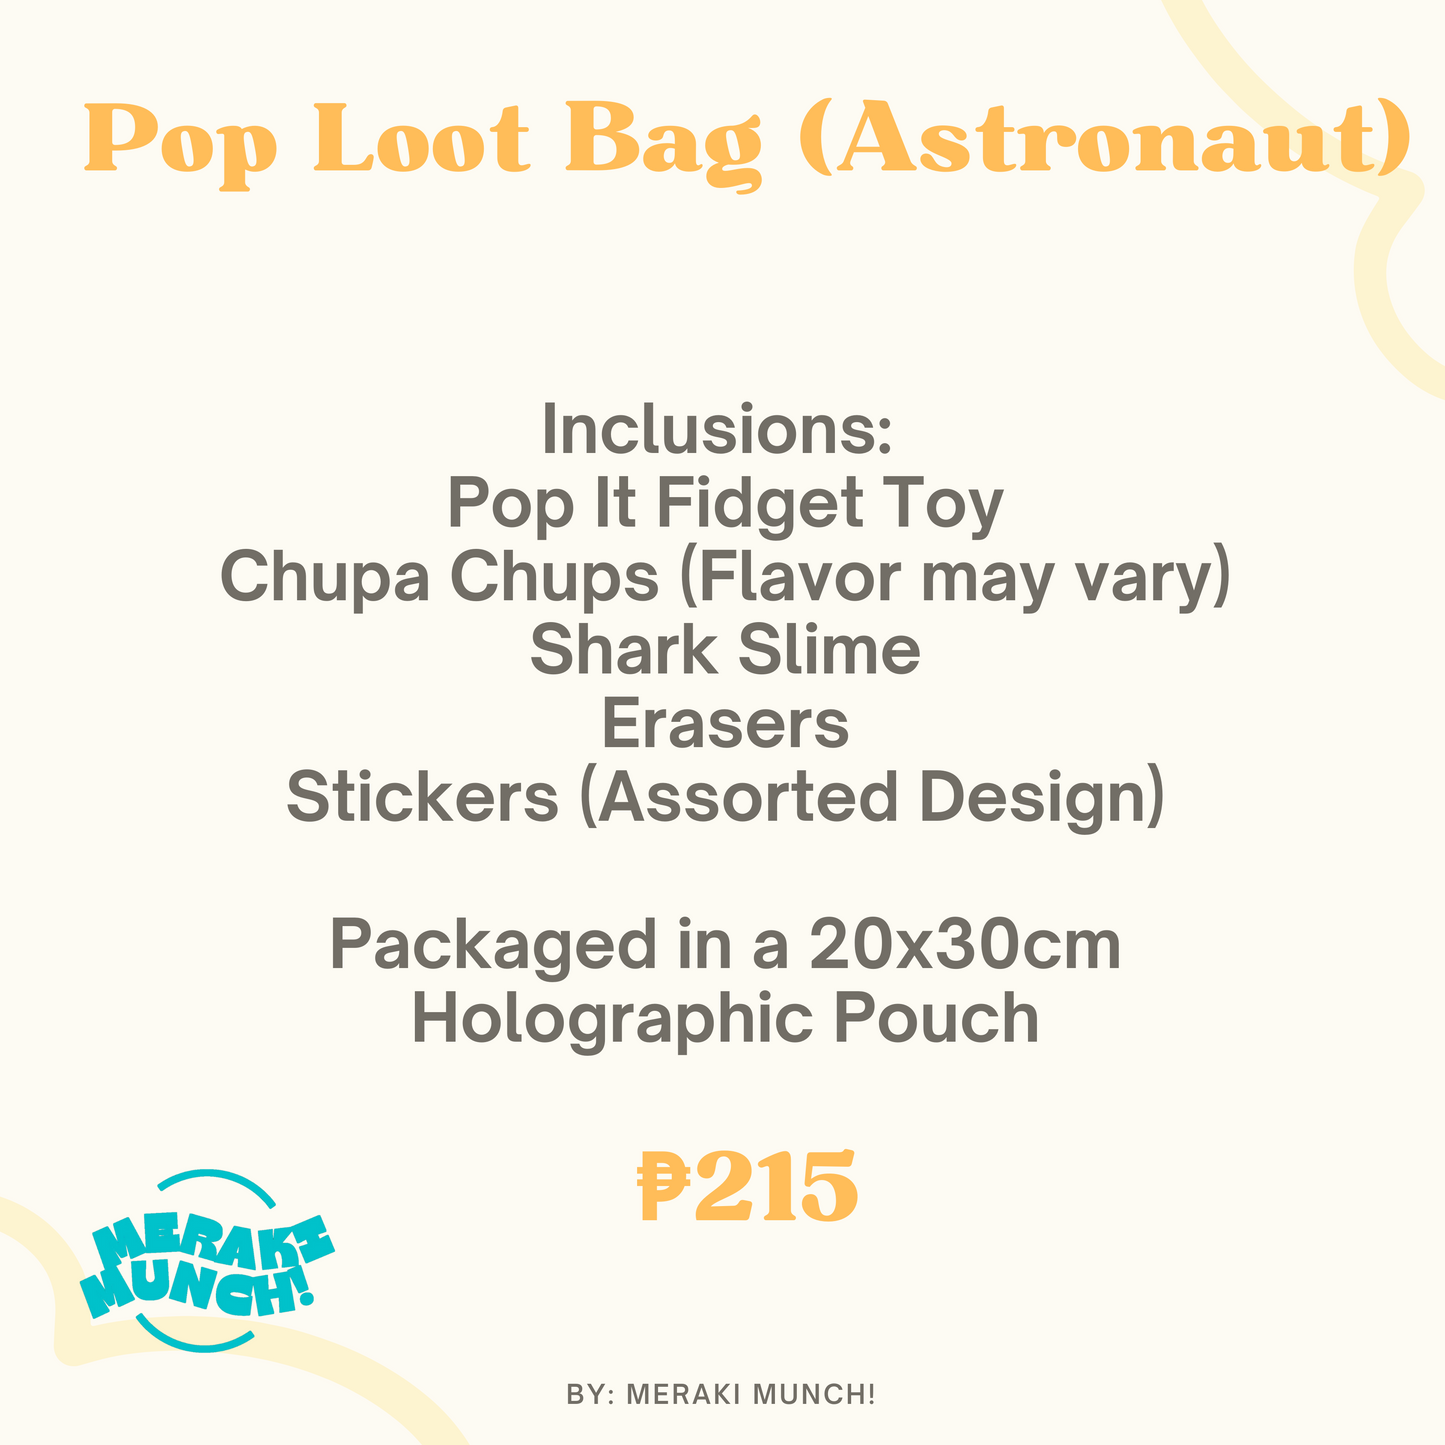 Pop Loot Bag